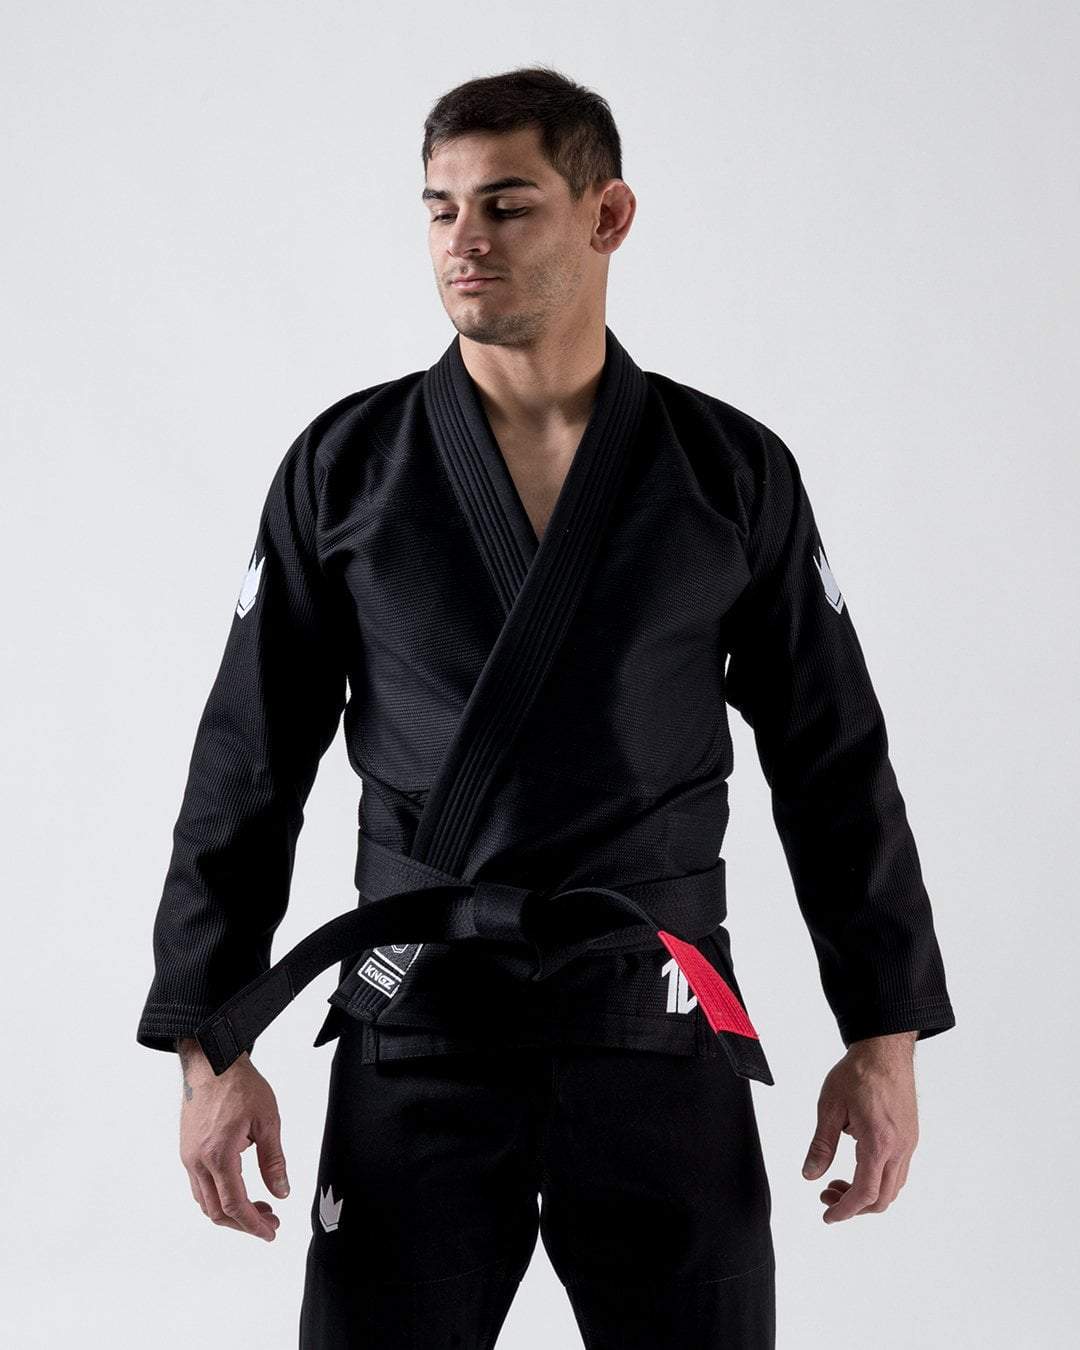 KINGZ The ONE Jiu Jitsu Gi - Black - FREE White Belt